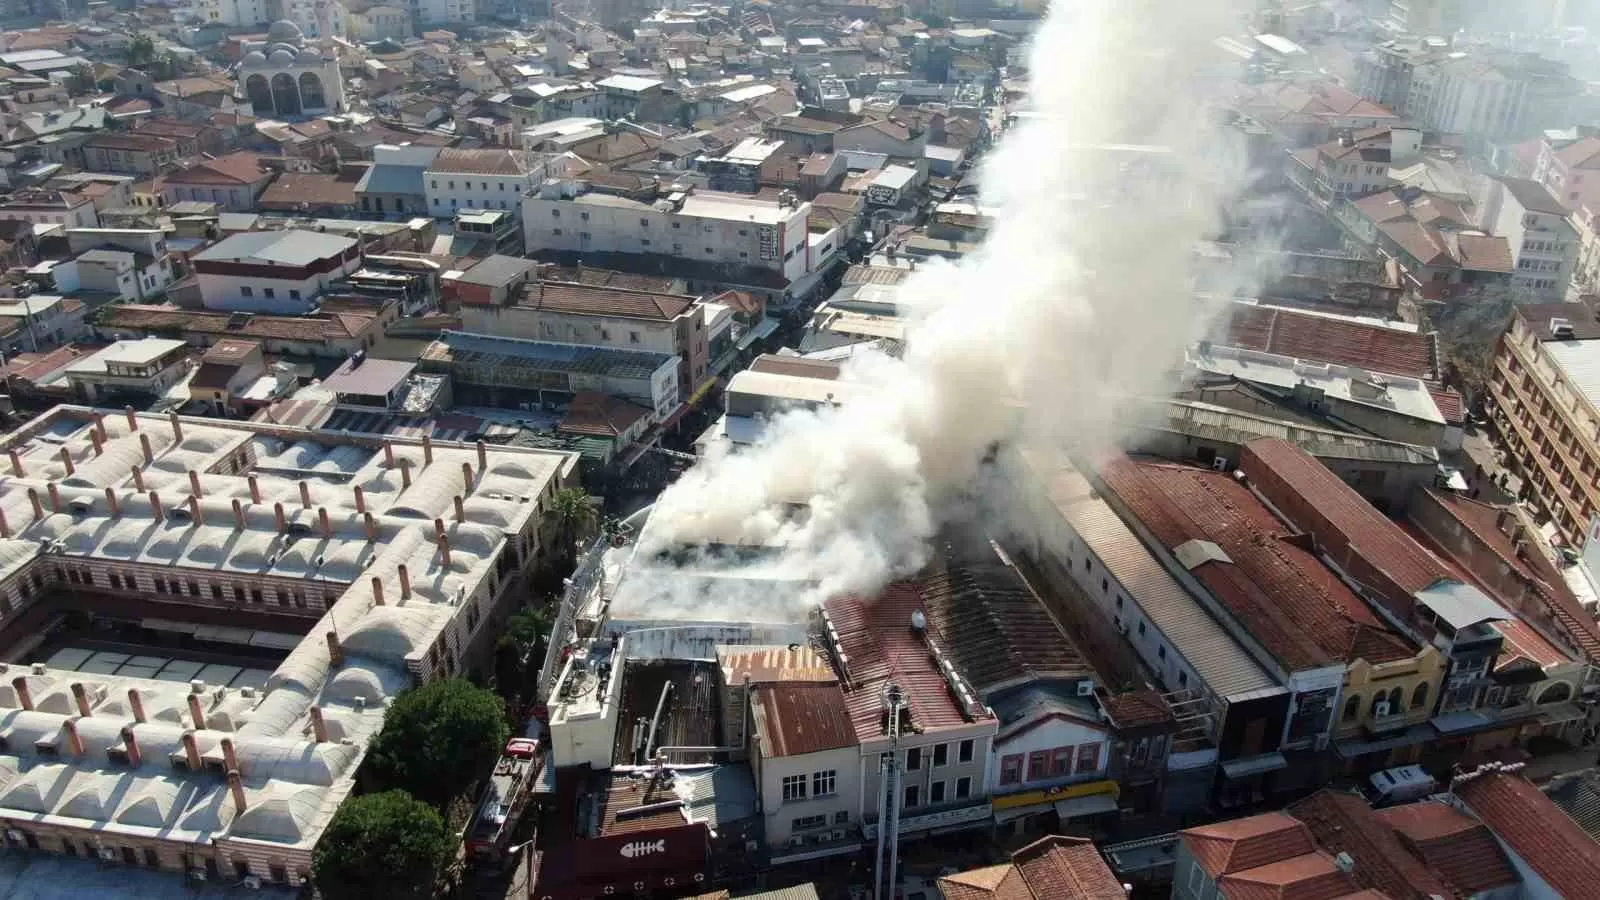 İzmir'deki tarihi Kemeraltı Çarşısı'nda bulunan bir iş merkezinin ikinci katında yangın çıktı.